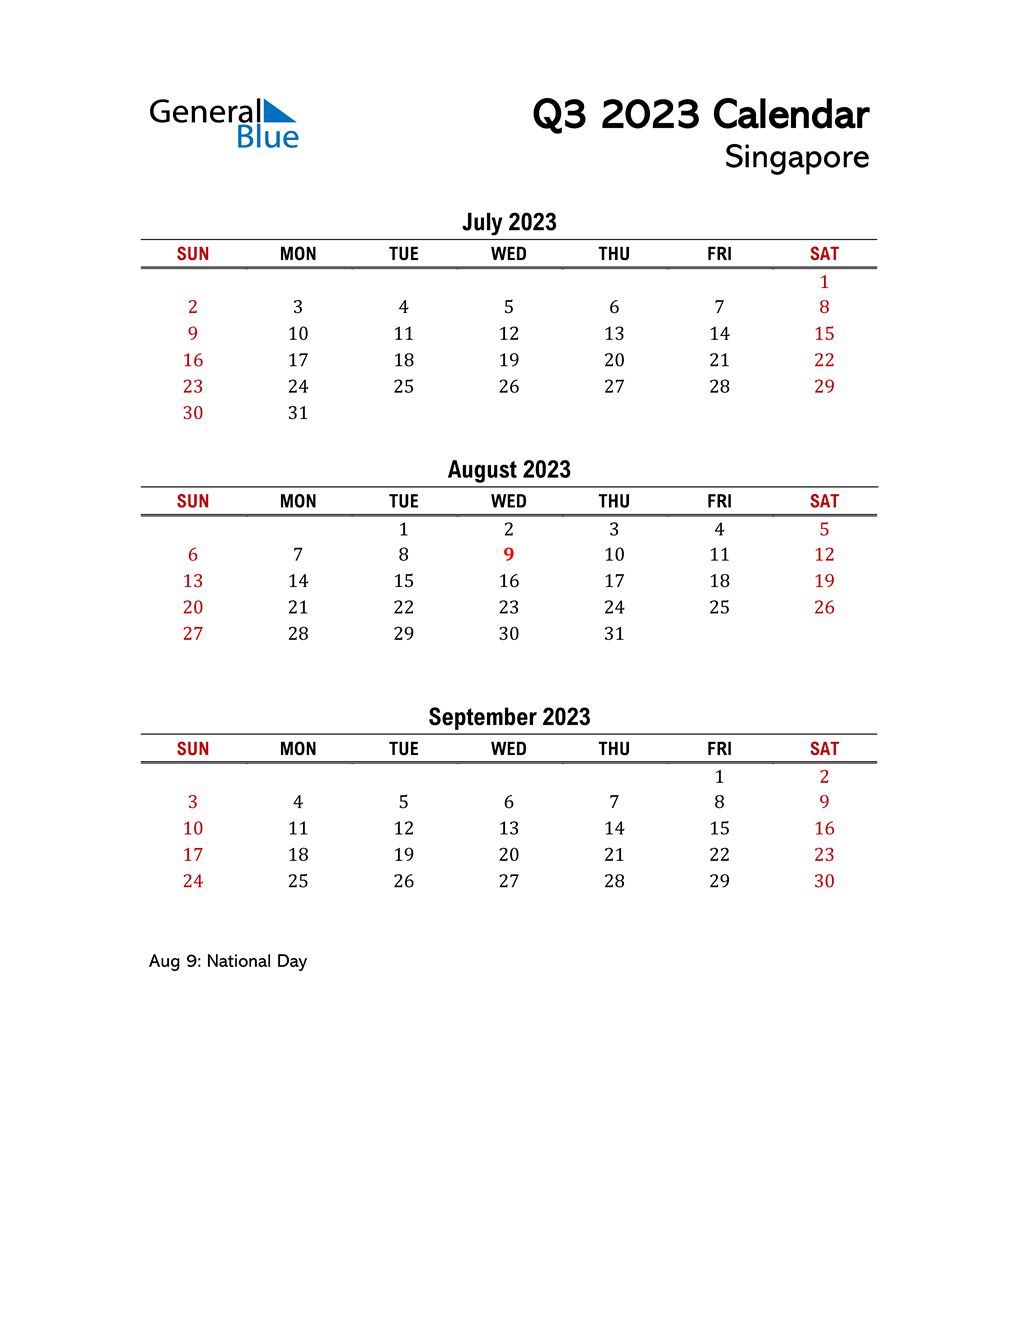 Q3 2023 Quarterly Calendar with Singapore Holidays